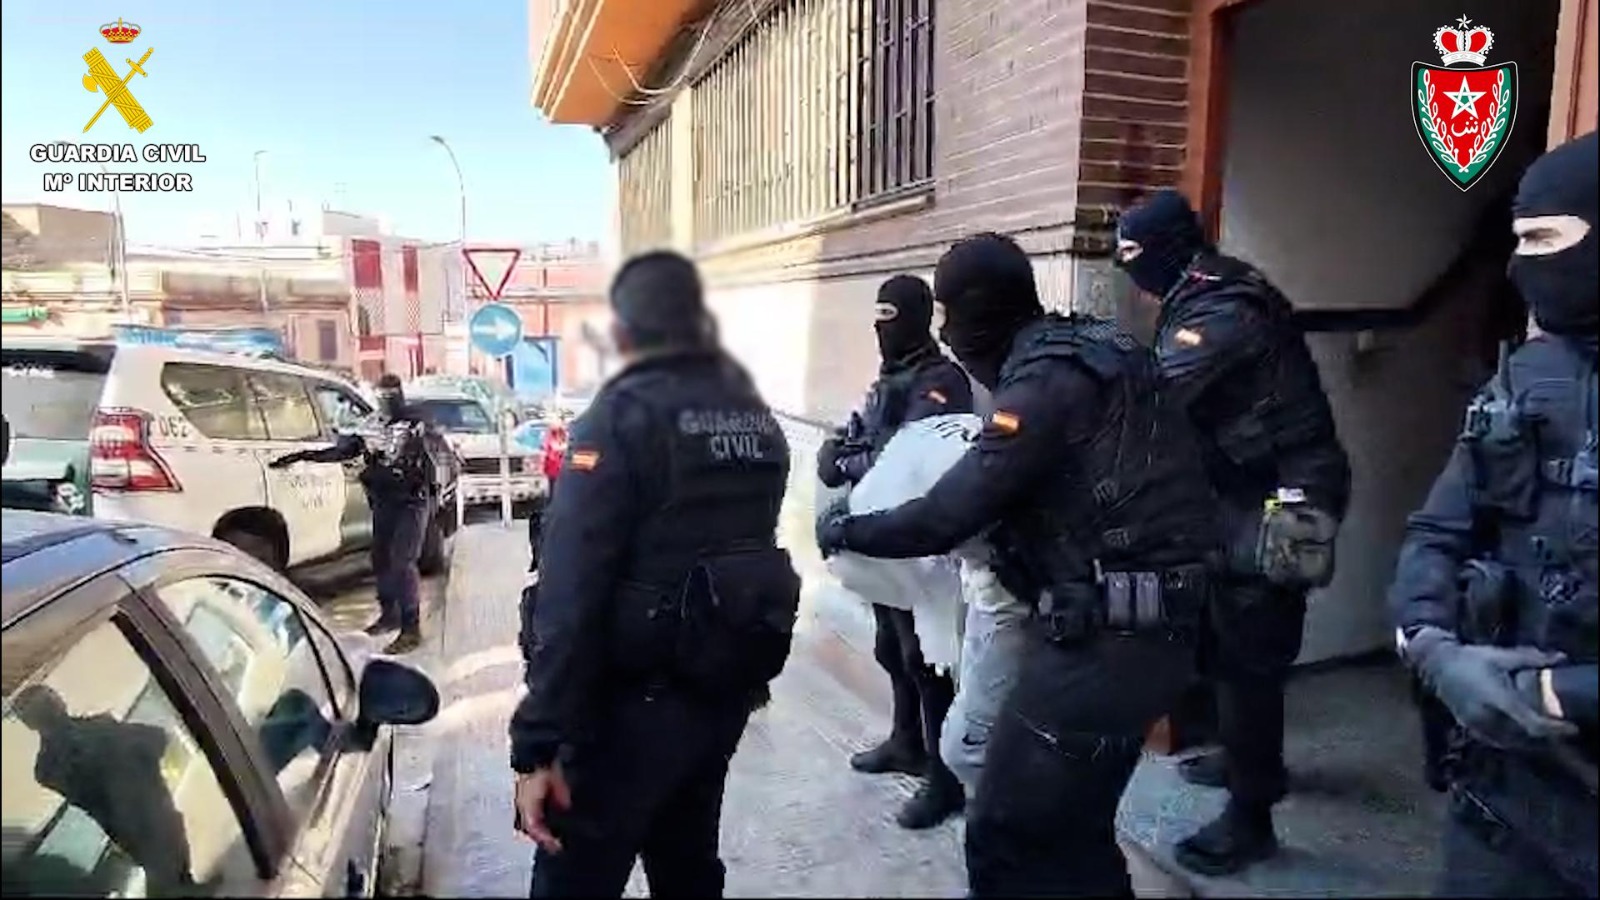 الحرس المدني الإسباني يفكك بتعاون وثيق مع المديرية العامة لمراقبة التراب الوطني خلية إرهابية متشعبة